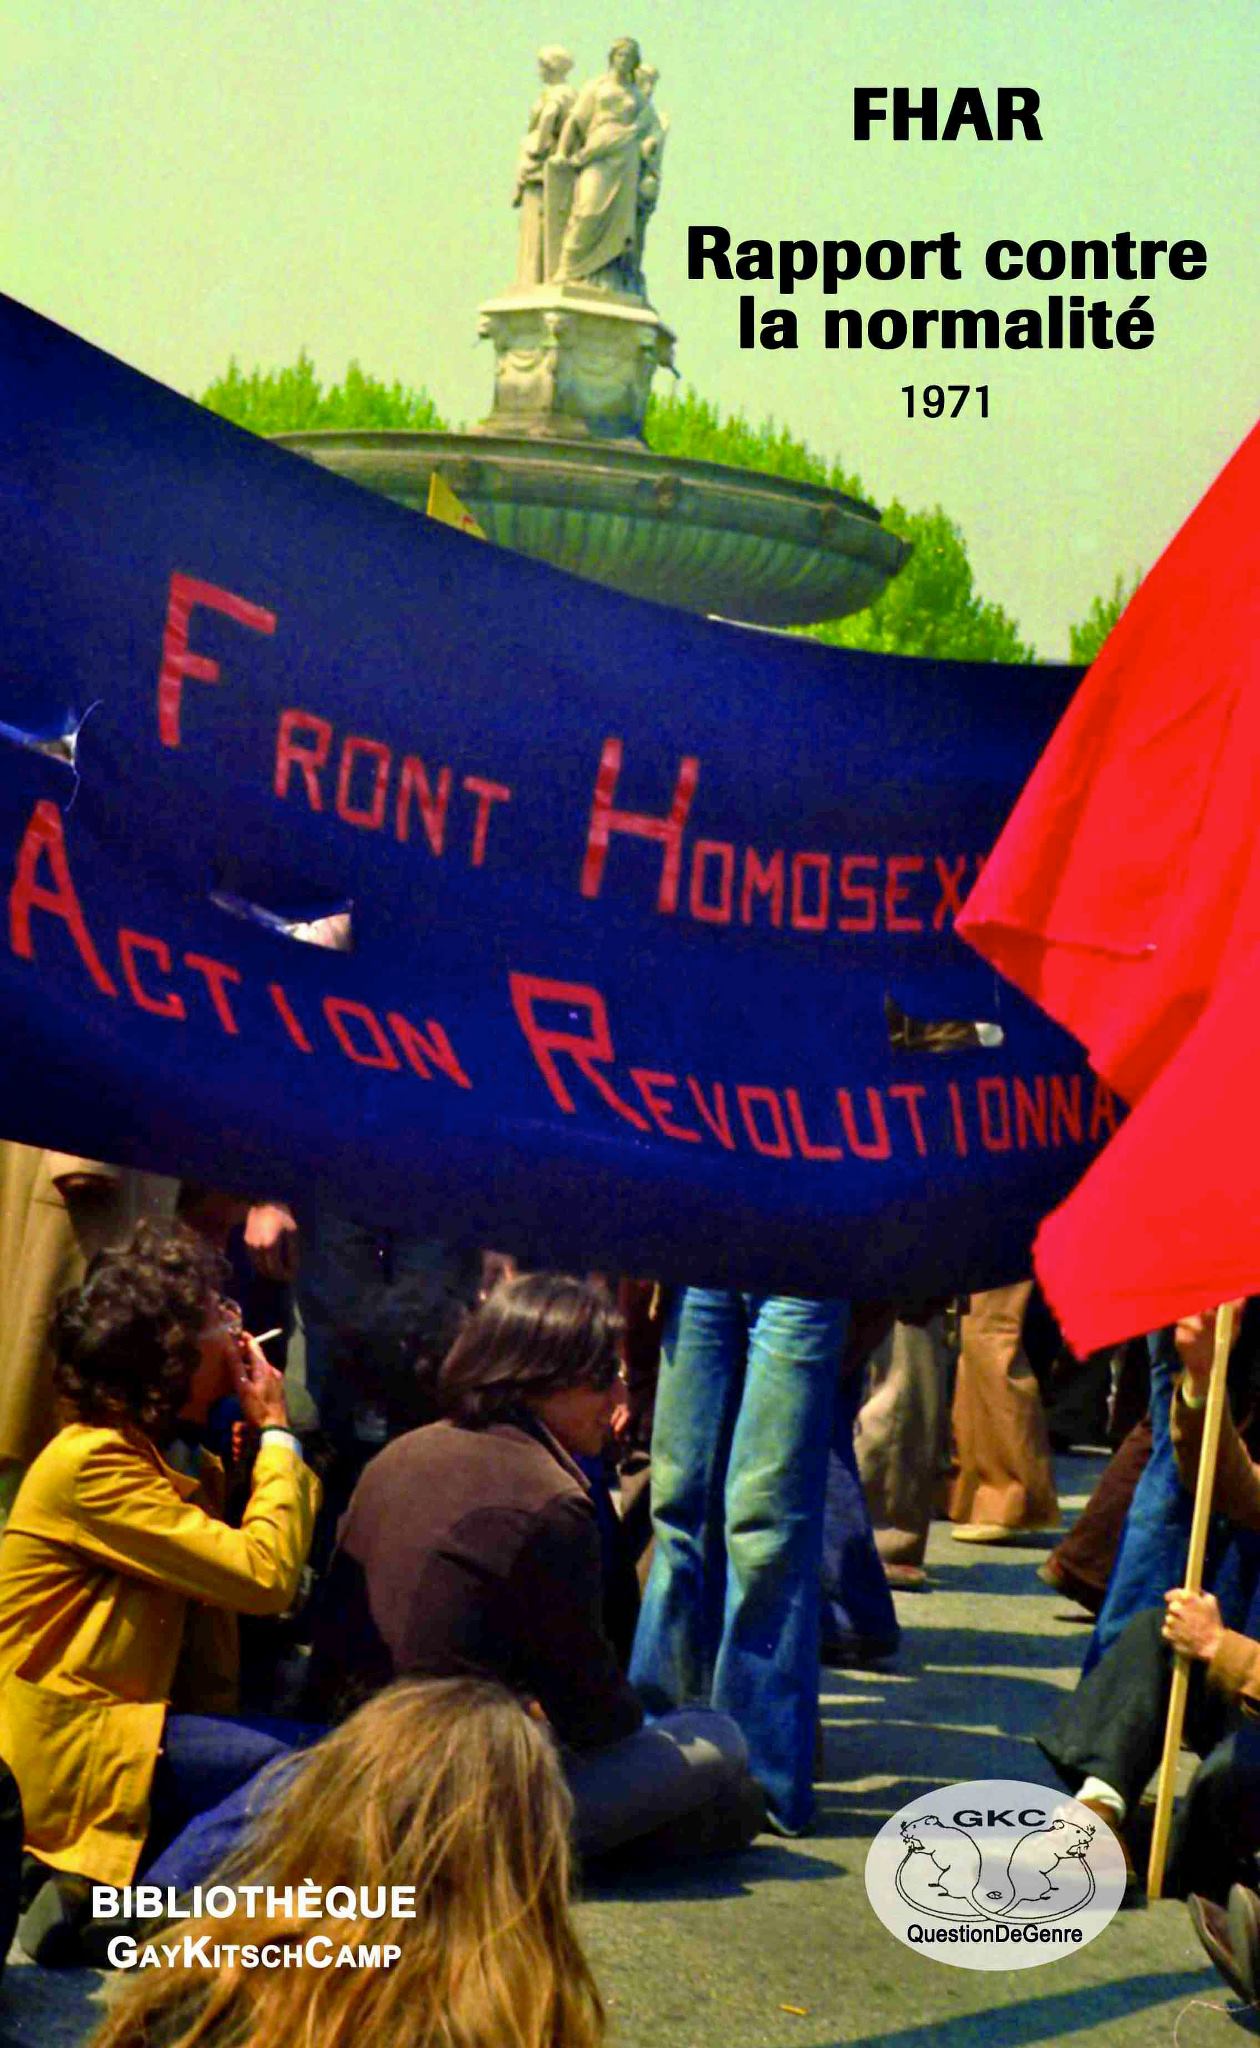 rapport contre la normalité front homosexuel d'action révolutionnaire fhar 1971 éditions gaykitschcamp